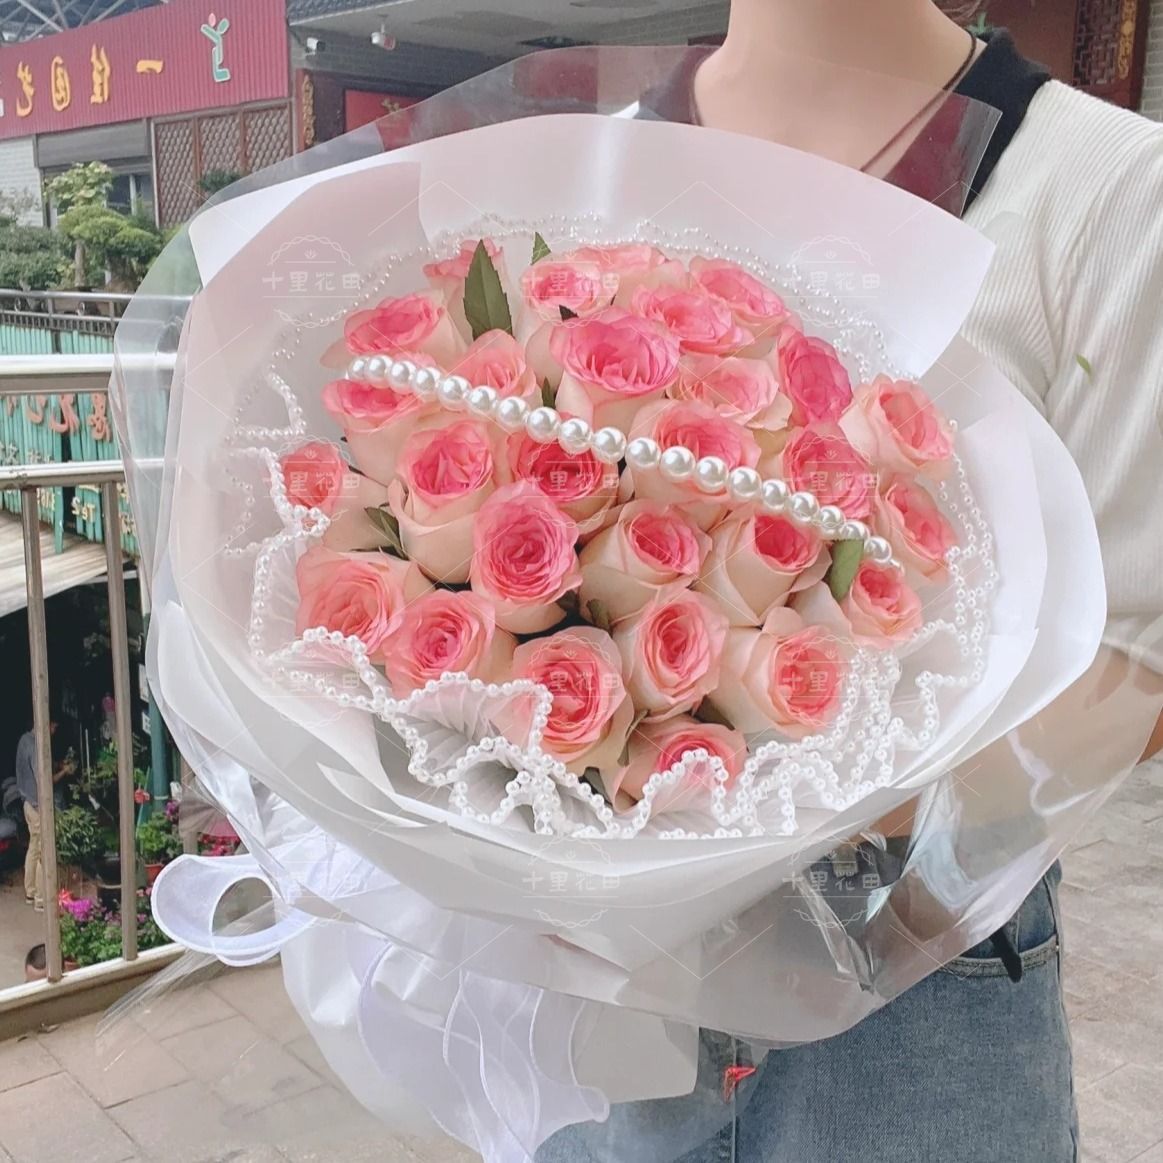 【爱意正浓】28朵艾莎玫瑰花束生日鲜花生日礼物花店送花上门鲜花配送